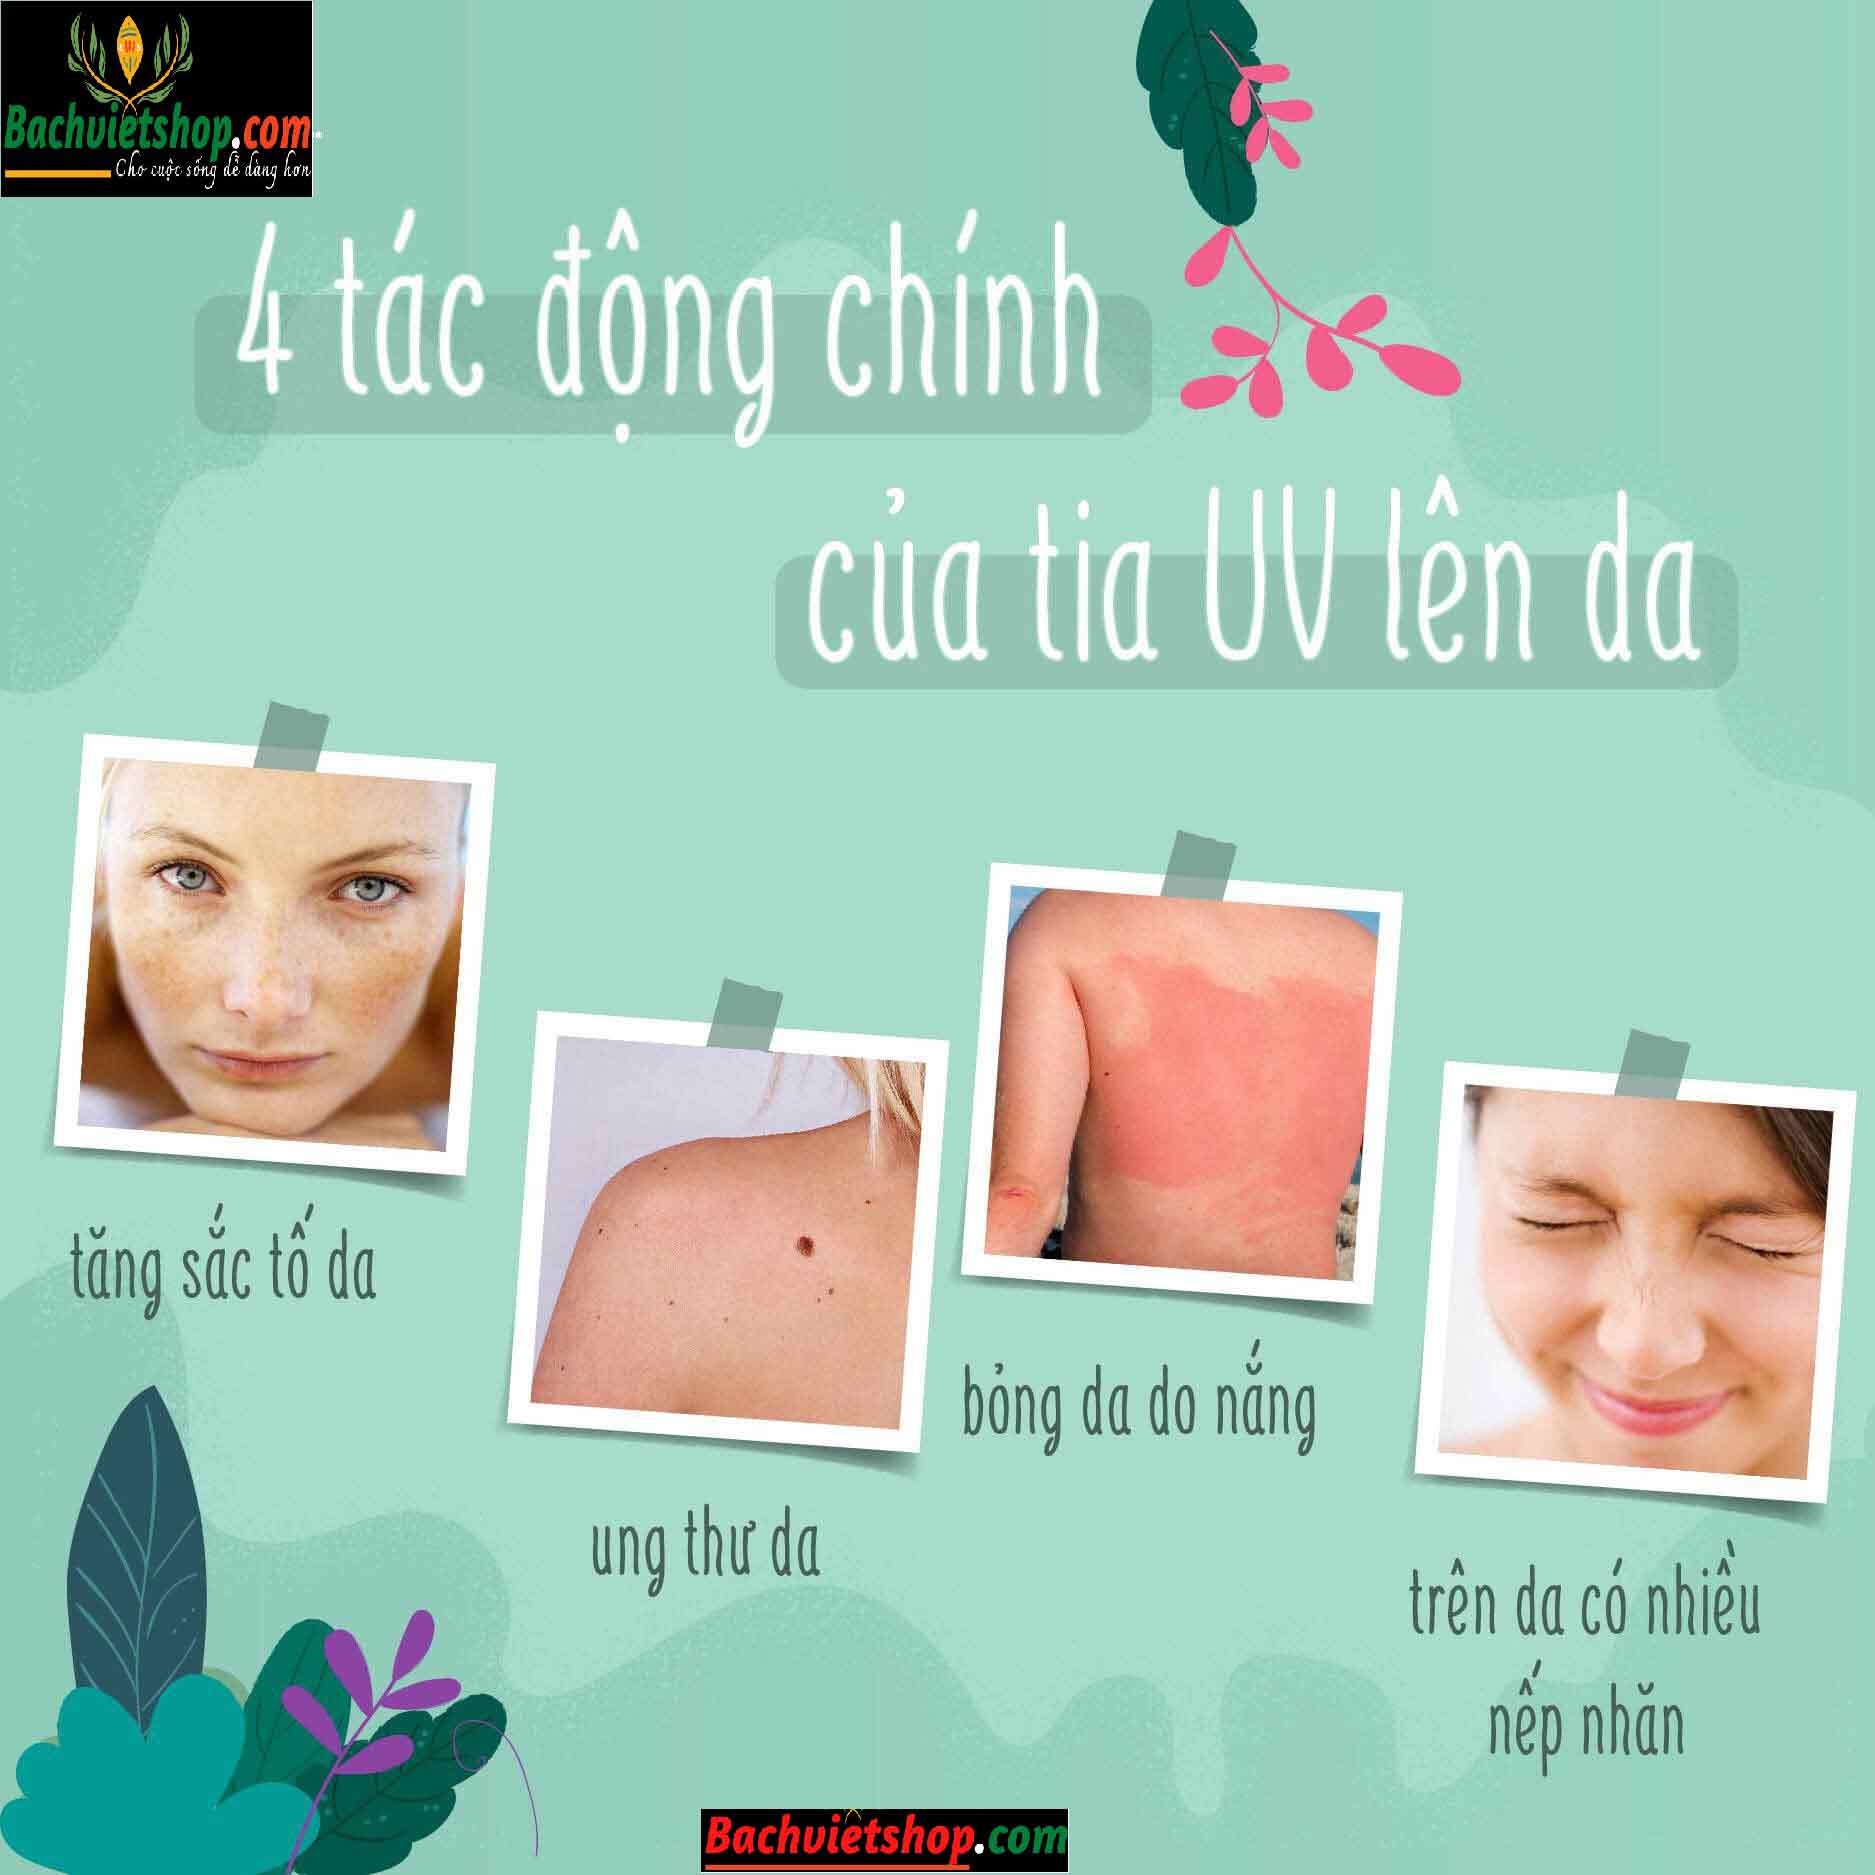 bốn tác động chính của tia UV lên da